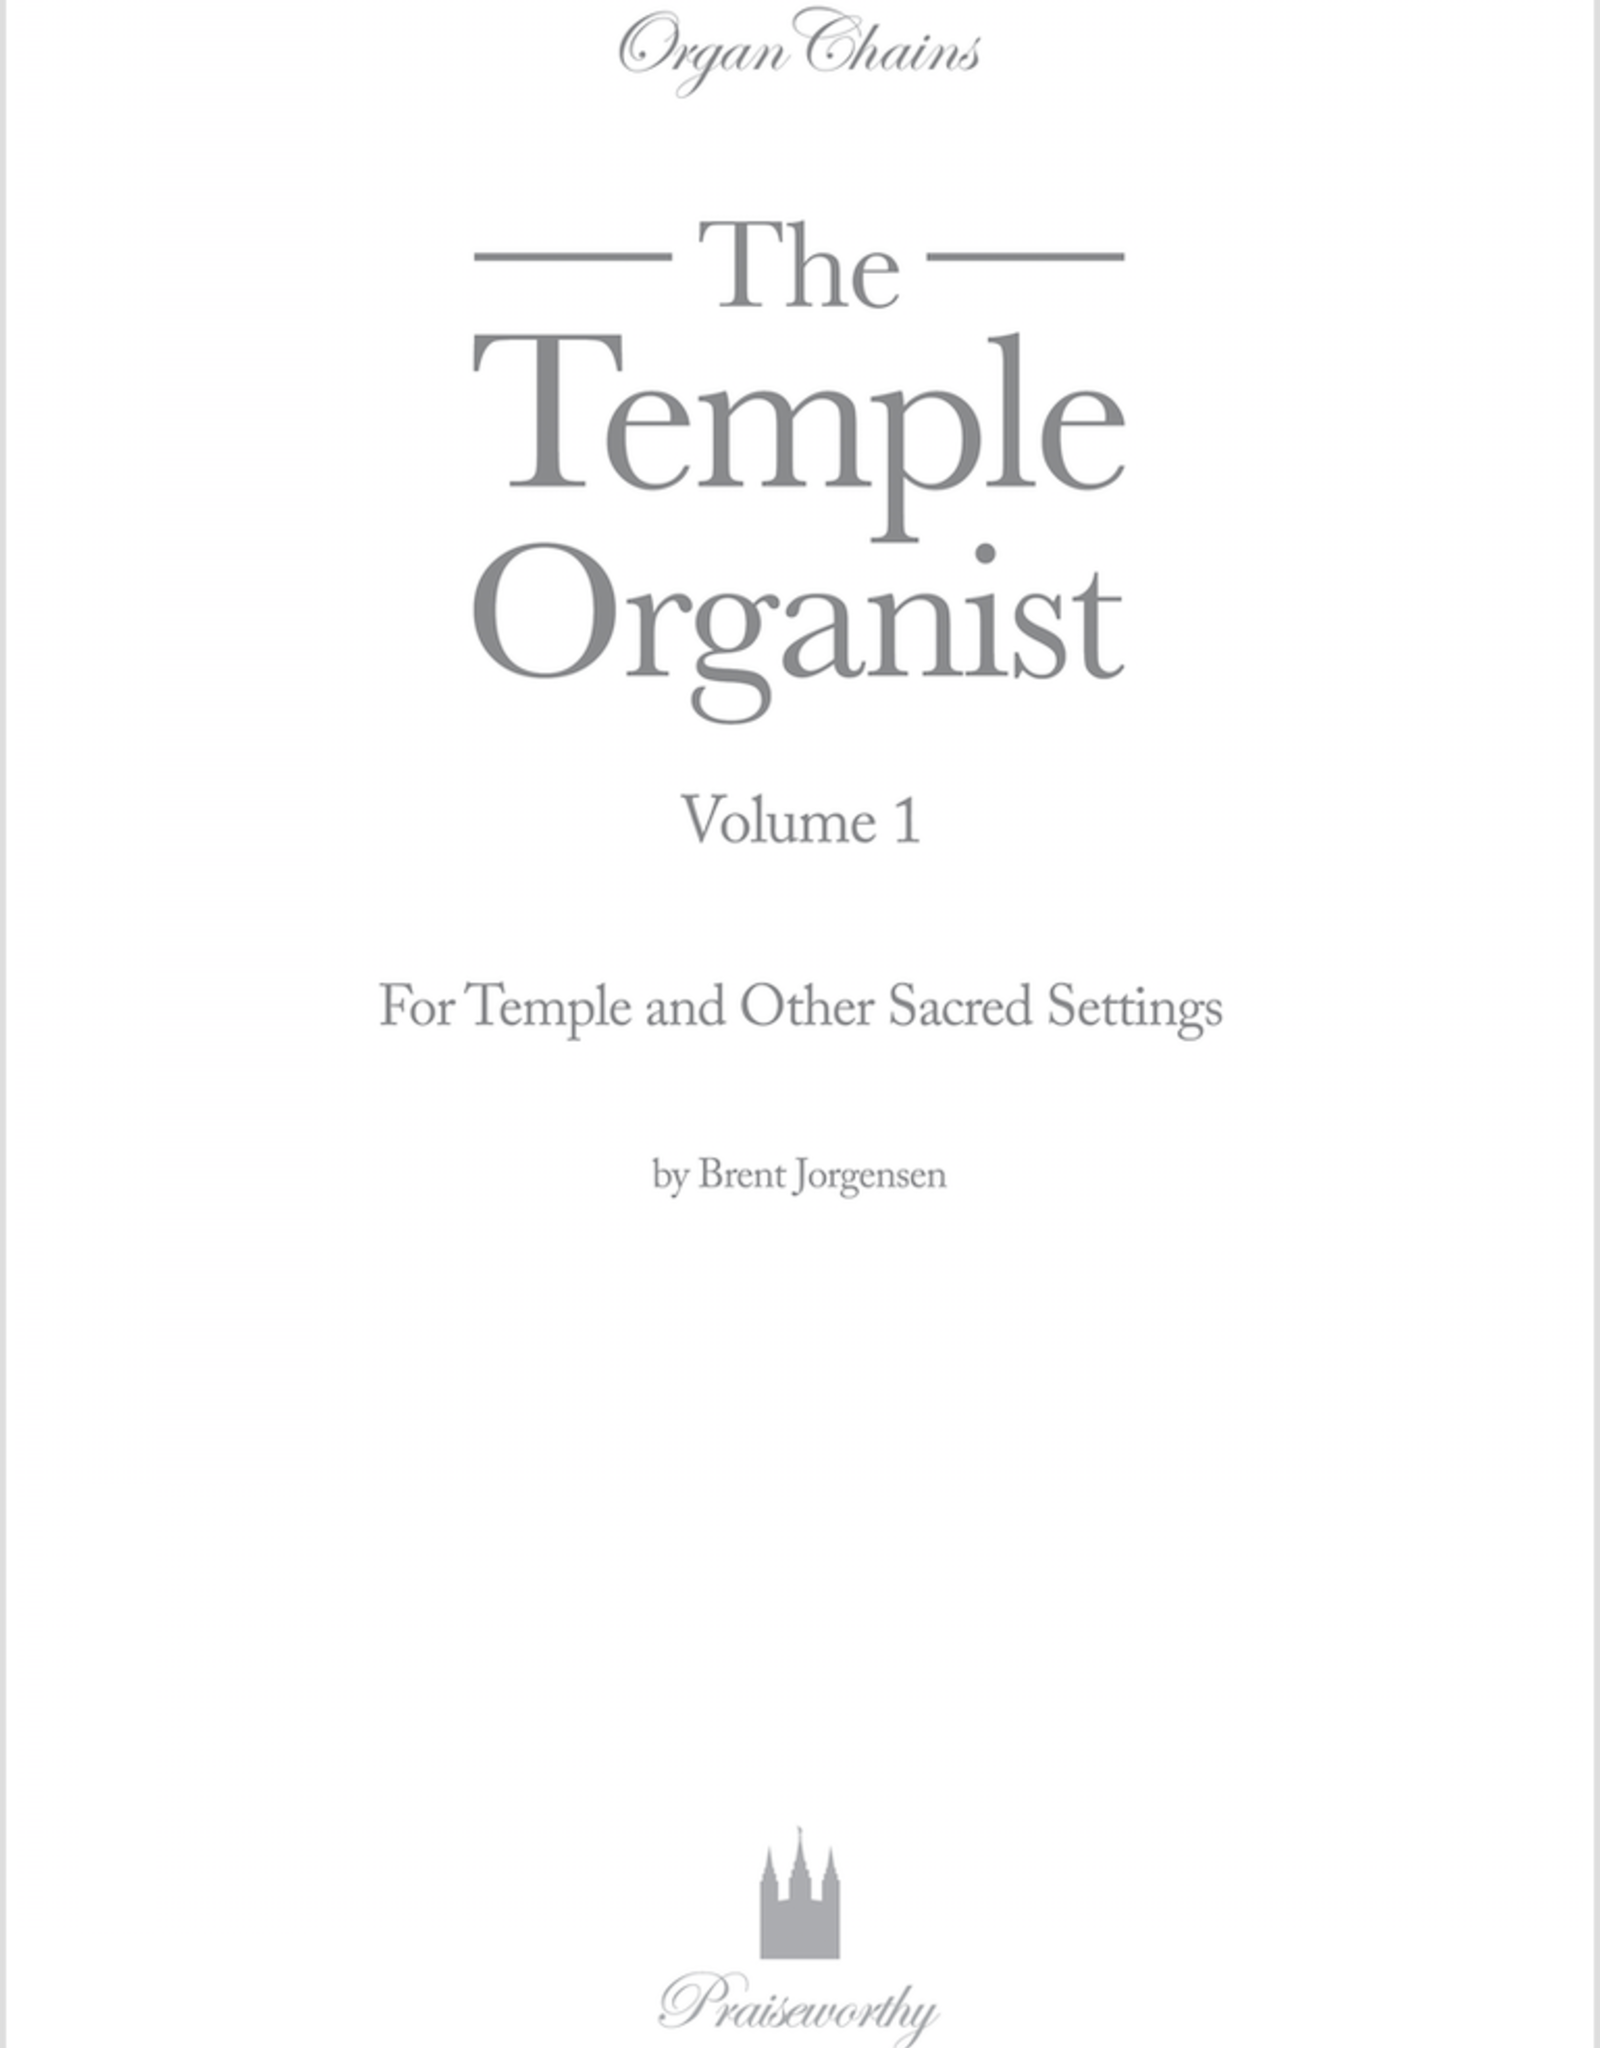 Jackman Music Organ Chains - Temple Organist Volume 1 arr. Brent Jorgensen